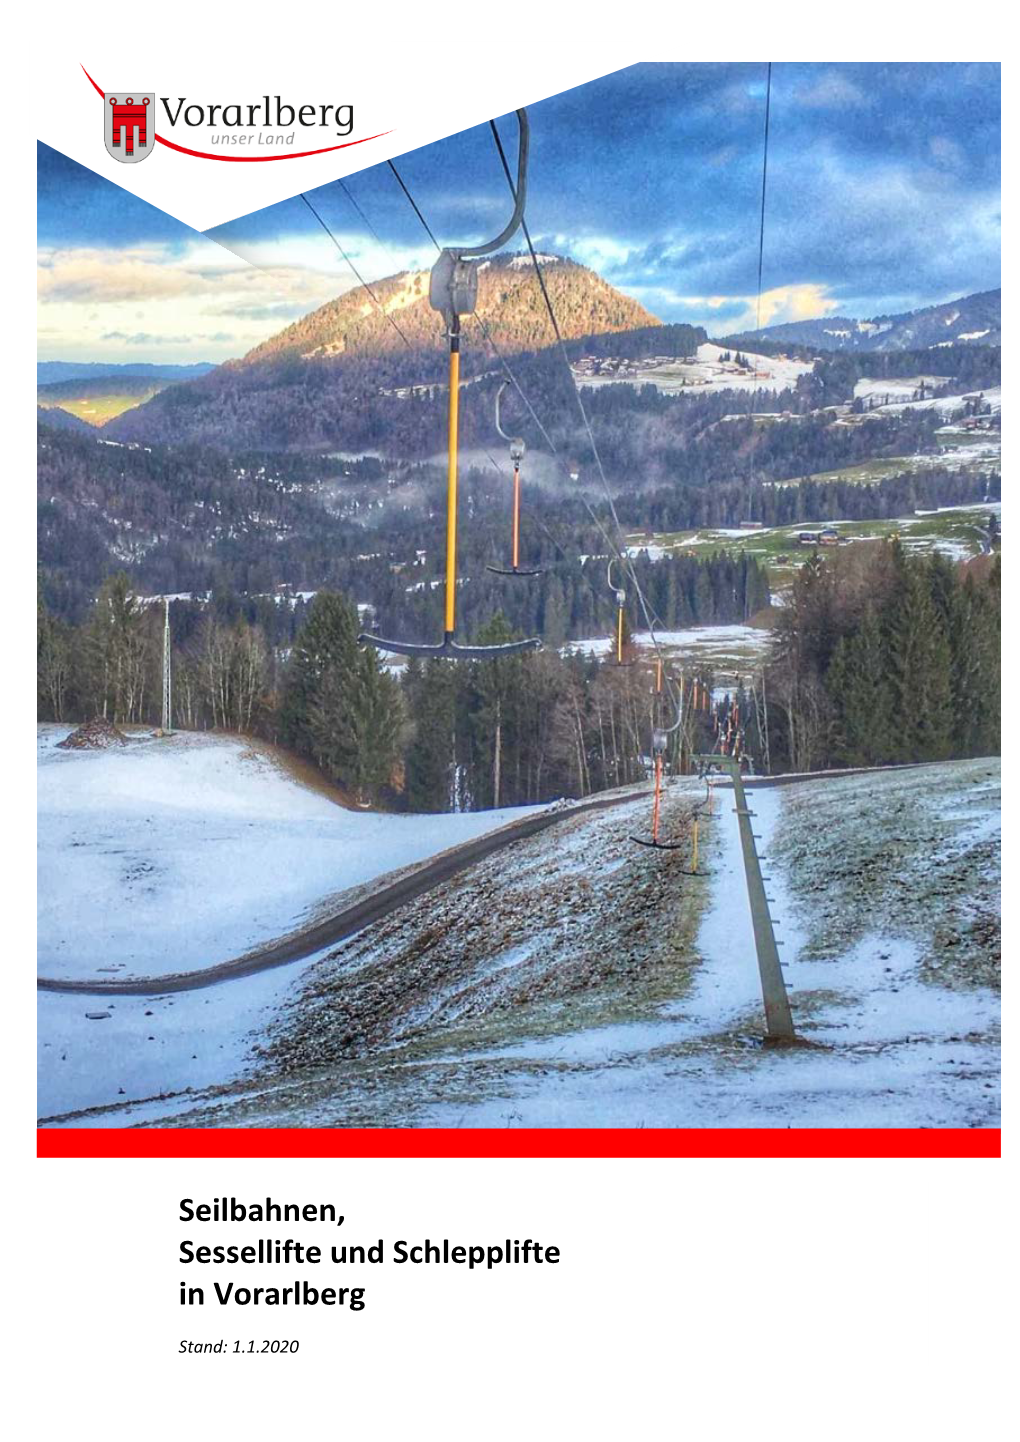 Seilbahnen, Sessellifte Und Schlepplifte in Vorarlberg